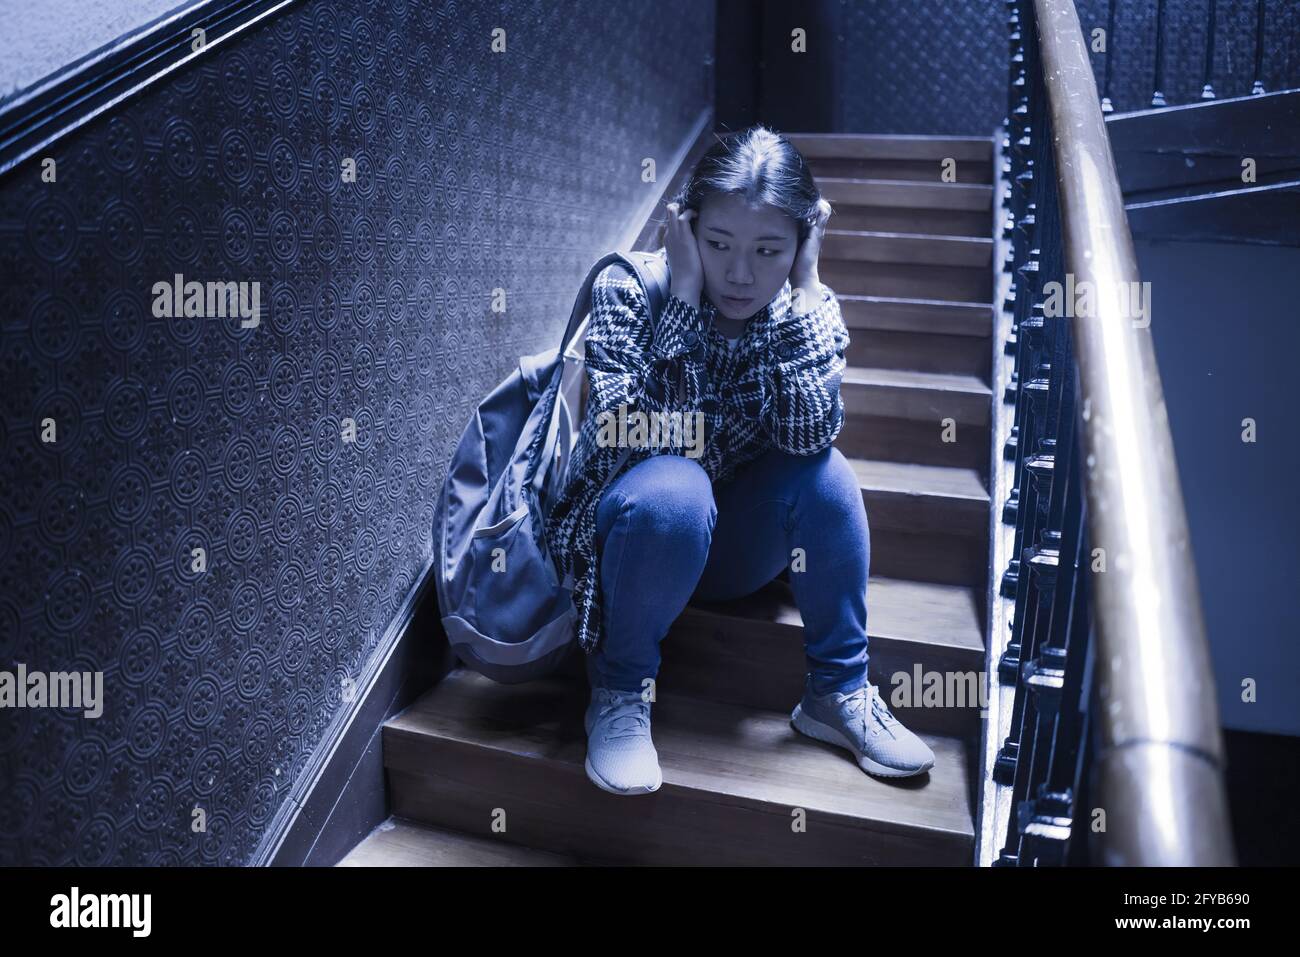 Jeune belle femme asiatique dans la douleur souffrant de dépression - dramatique Portrait à l'intérieur sur l'escalier d'une fille japonaise triste et déprimée comme victime de taureau Banque D'Images